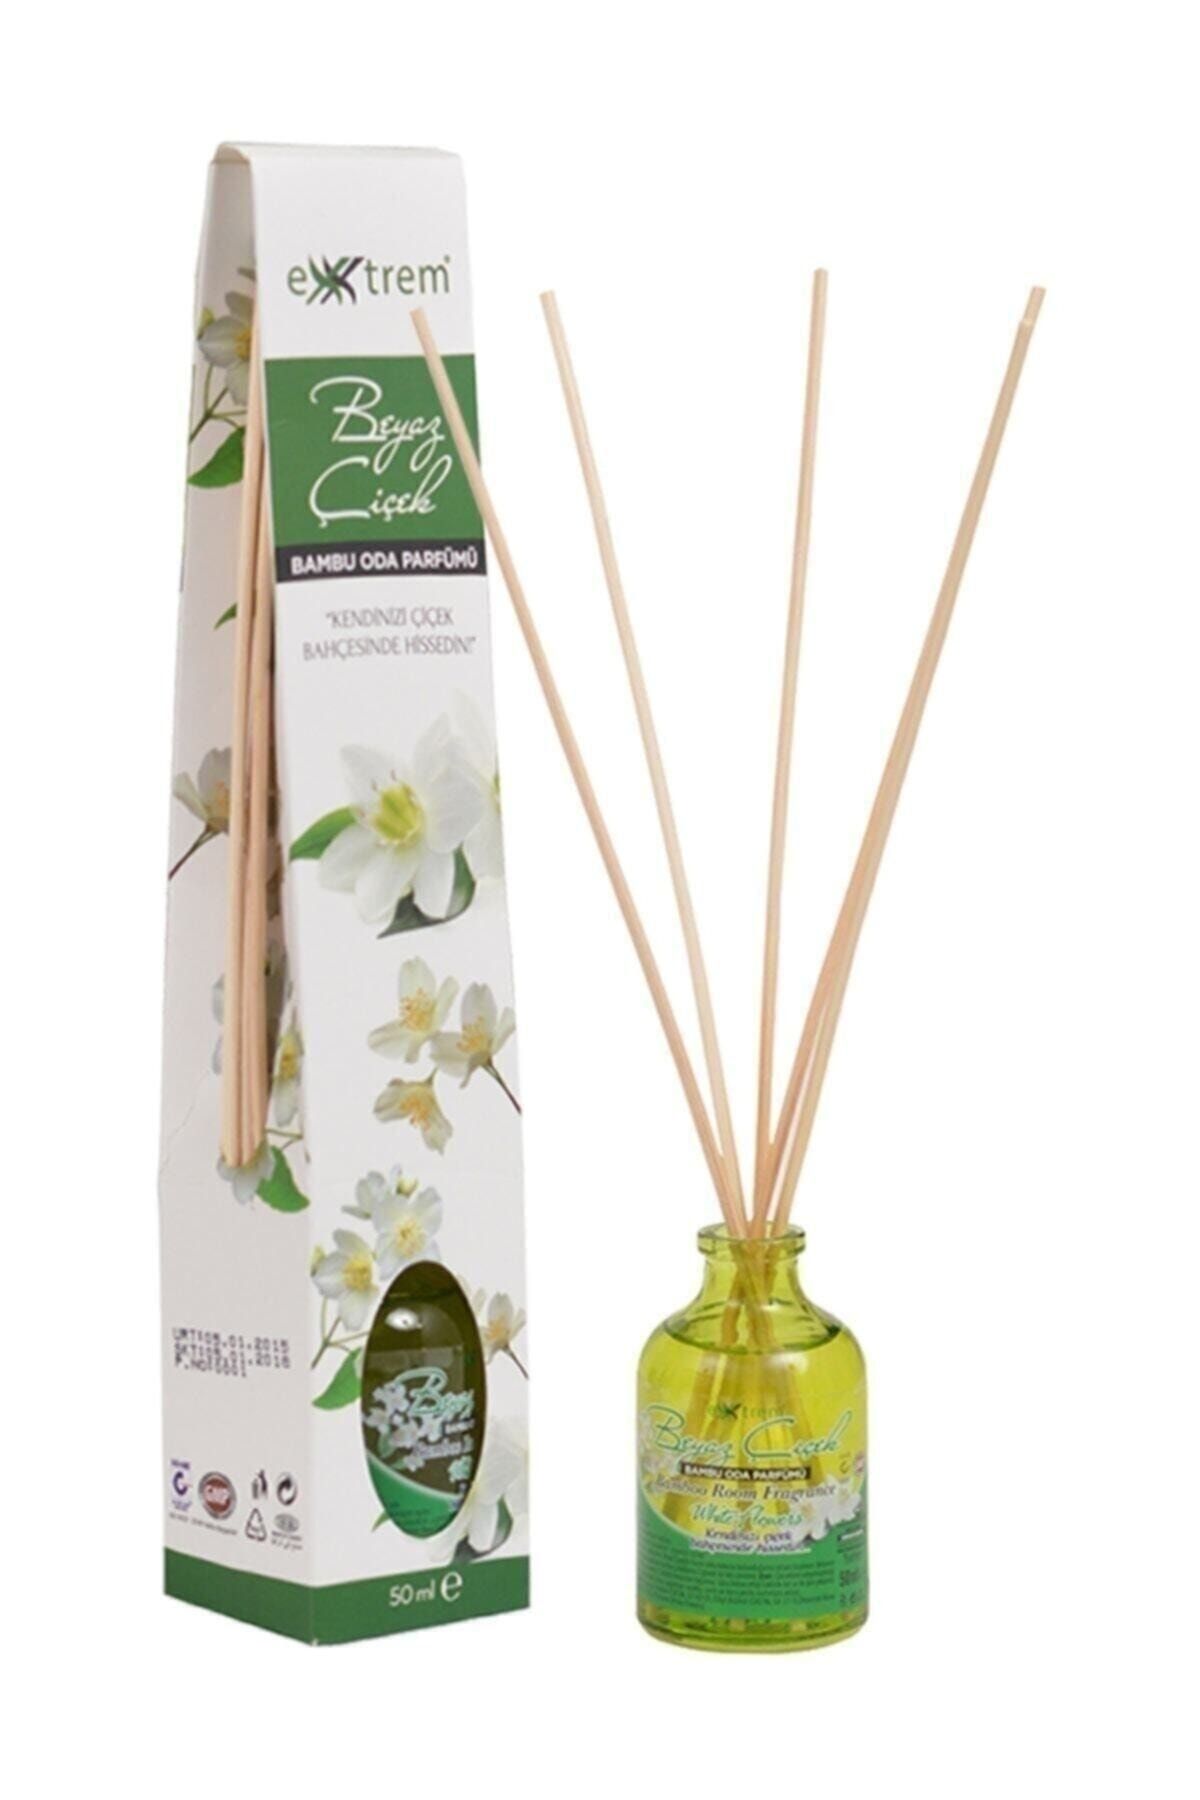 Extrem Oda Kokusu Beyaz Çiçek Bambu Çubuk 50 ml Fiyatı, Yorumları